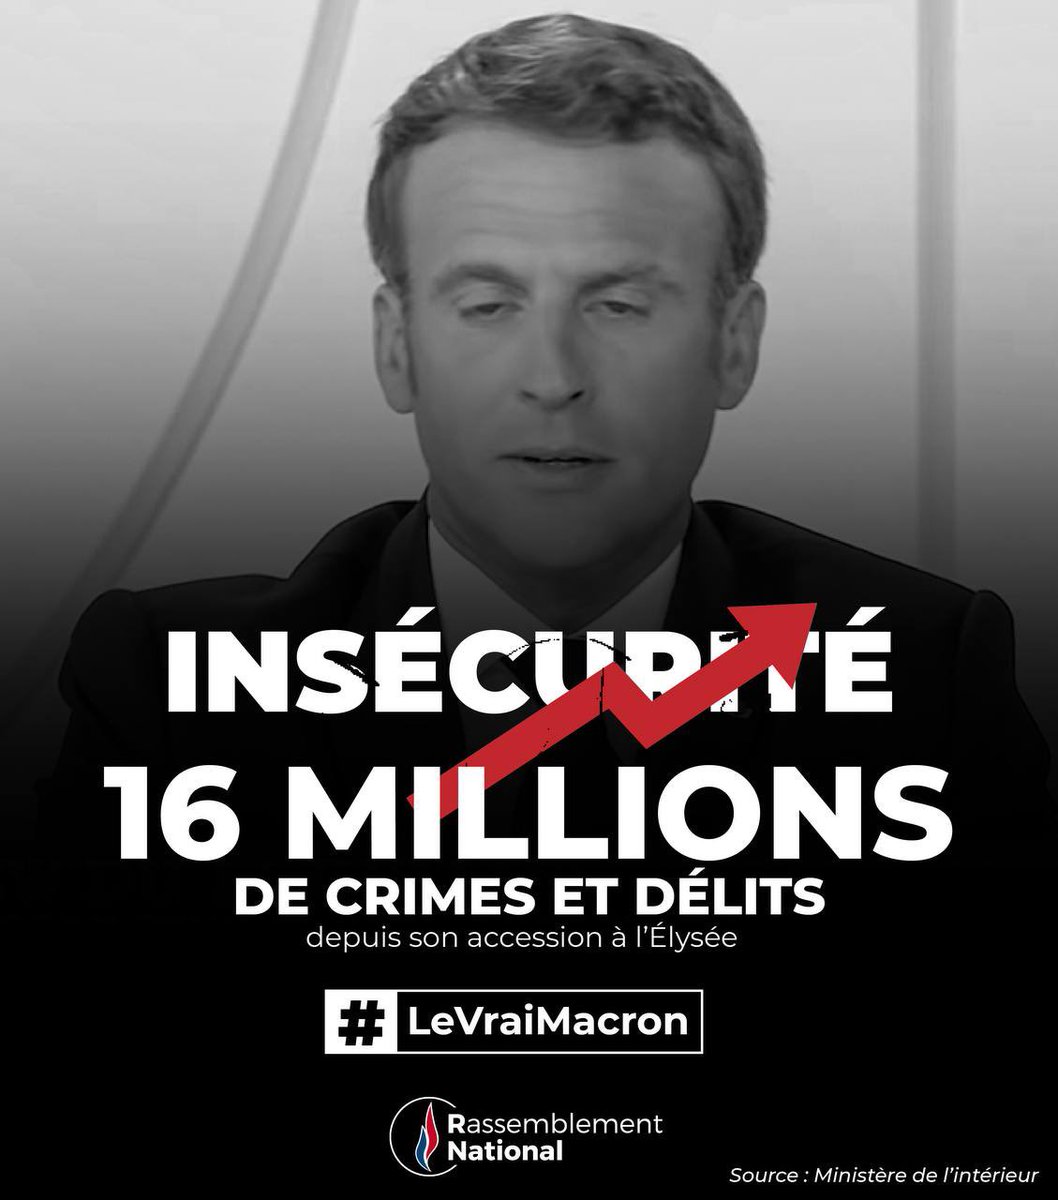 La priorité de Macron n’est pas la sécurité des Français ! #LeVraiMacron #MacronTF1